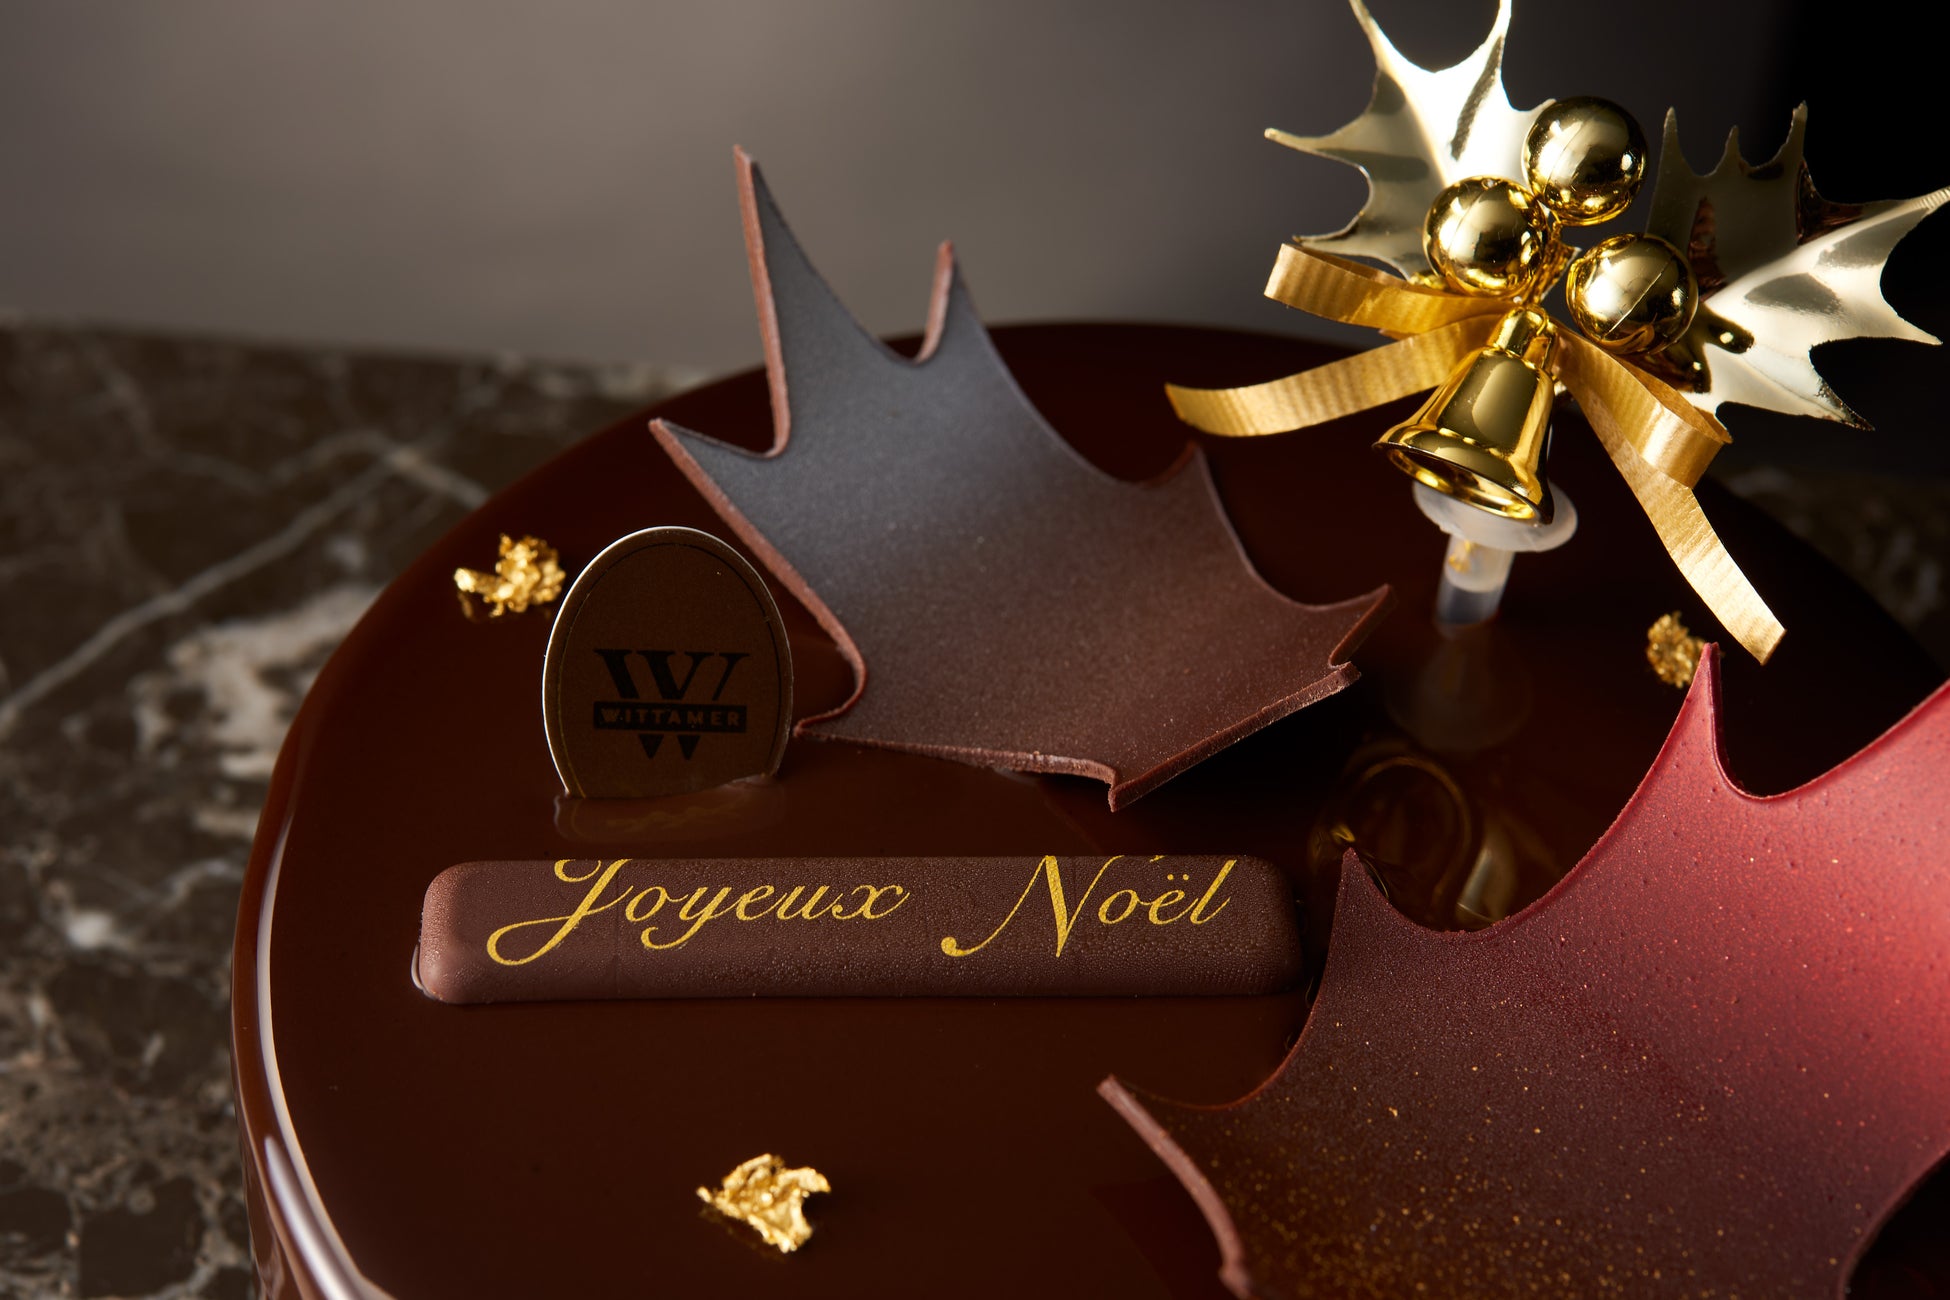 ベルギー王室御用達チョコレートブランド「ヴィタメール」特別なクリスマスケーキを販売いたします